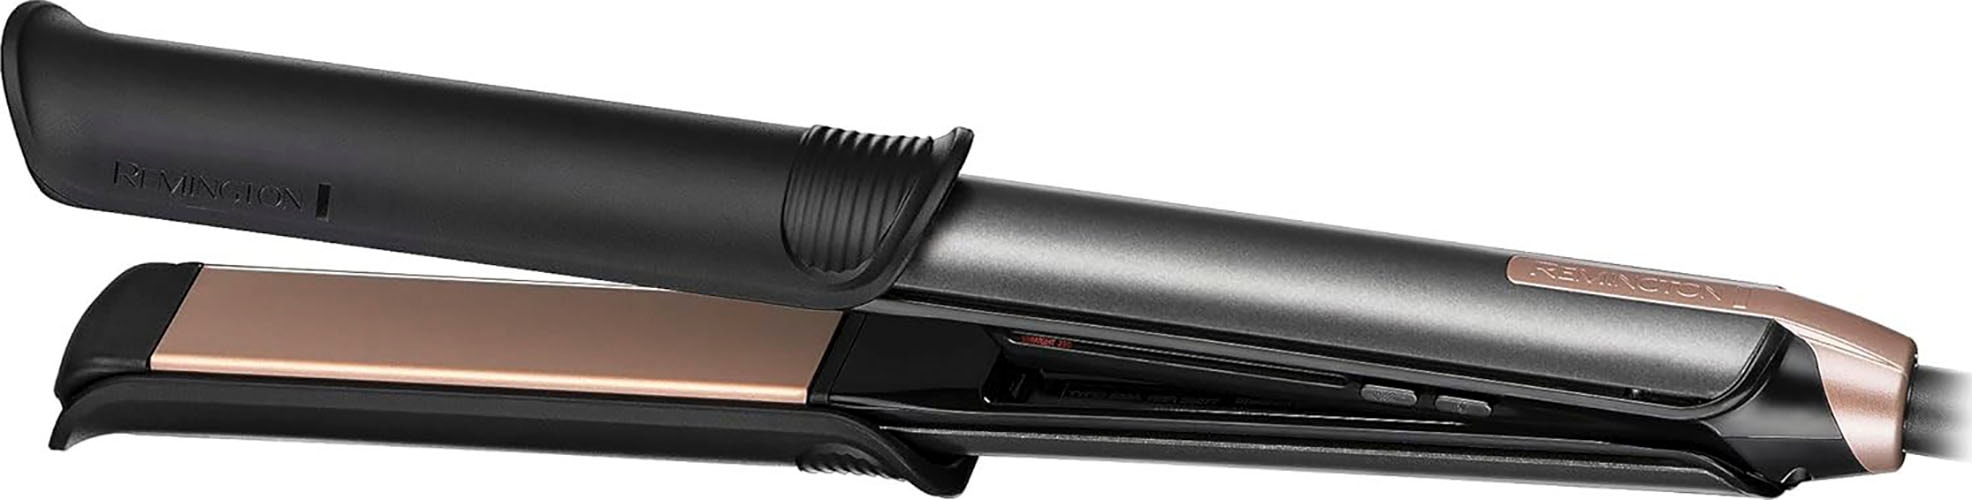 Remington Glätteisen »S6077 ONE Straight & Curl Styler«, 2in1  Styler,Glätt-/Lockenmodus mit zuschaltbarer beheizter Außenfläche mit 3  Jahren XXL Garantie